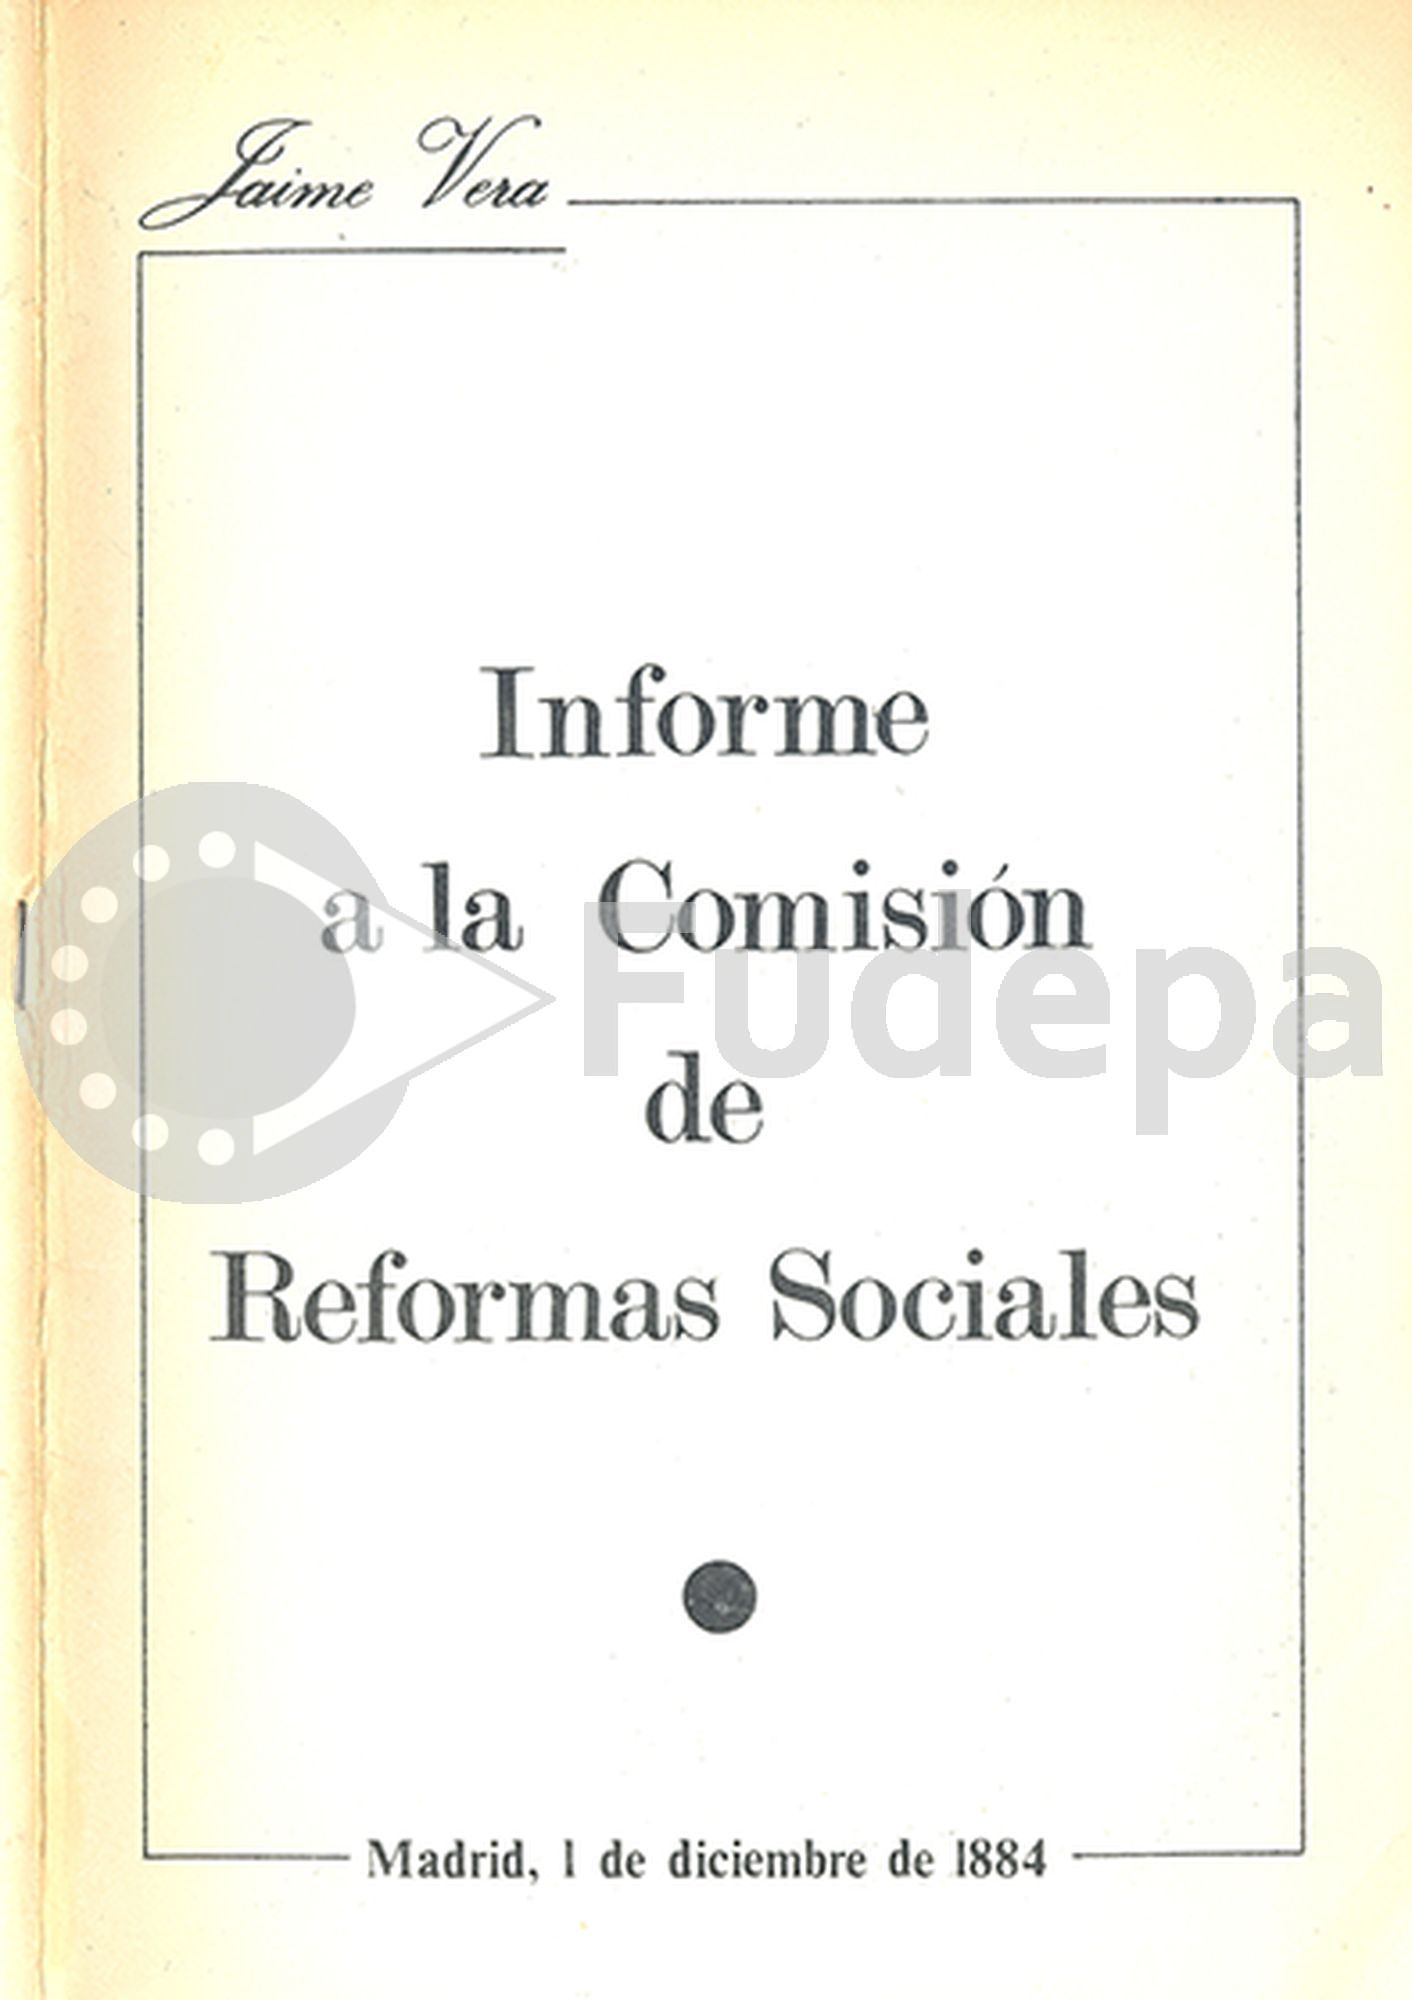 Jaime Vera. Informe a la Comisión de Reformas Sociales. Madrid, 1 de diciembre de 1884. Ed. Técnicos, 1971.  FUDEPA. AHUGT-A: C_12877/15